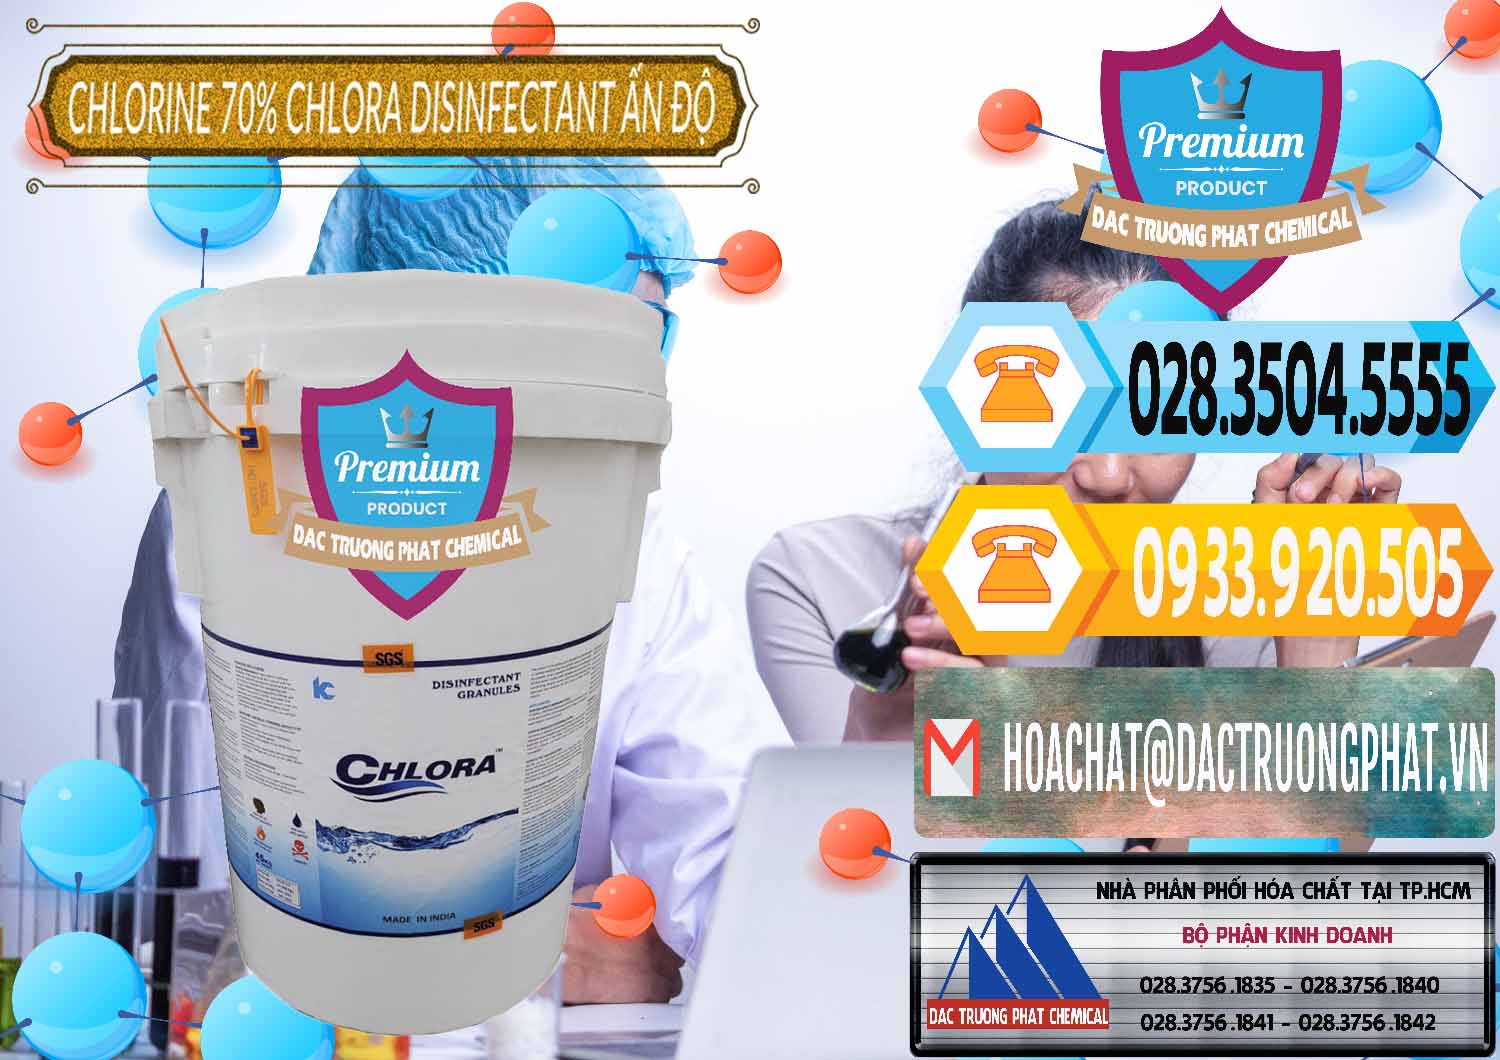 Nơi chuyên phân phối _ bán Chlorine – Clorin 70% Chlora Disinfectant Ấn Độ India - 0213 - Nơi bán _ phân phối hóa chất tại TP.HCM - hoachattayrua.net